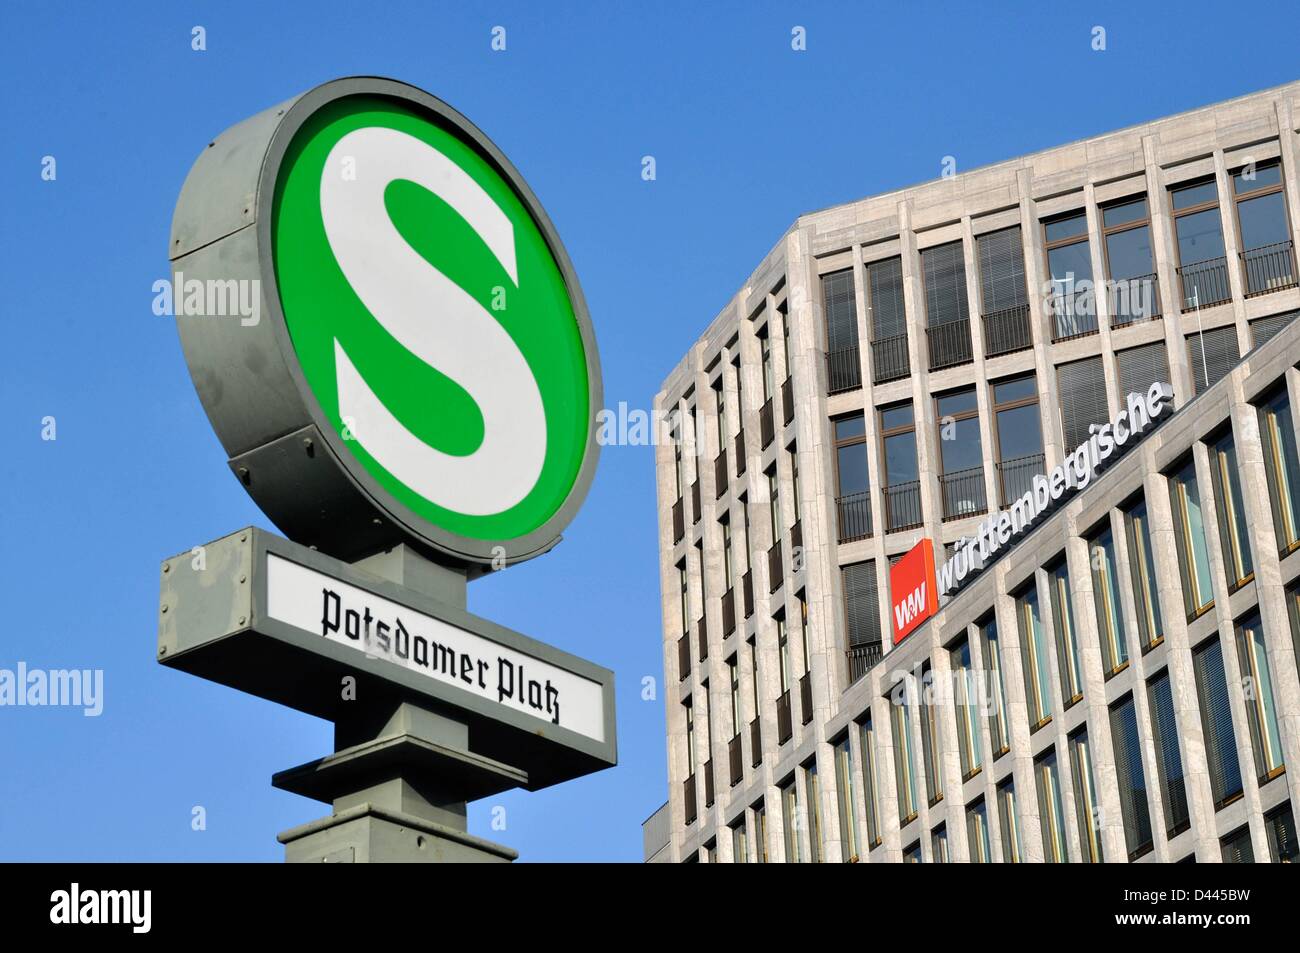 A Berlino (Germania), il 10 febbraio 2012, è raffigurato un cartello della S-Bahn con la scritta "Potsdamer Platz" e in background la pubblicità all'aperto della compagnia di assicurazione Württembergische Versicherung sull'edificio di Potsdamer Platz 8. Fotoarchiv für ZeitgeschichteS.Steinach Foto Stock